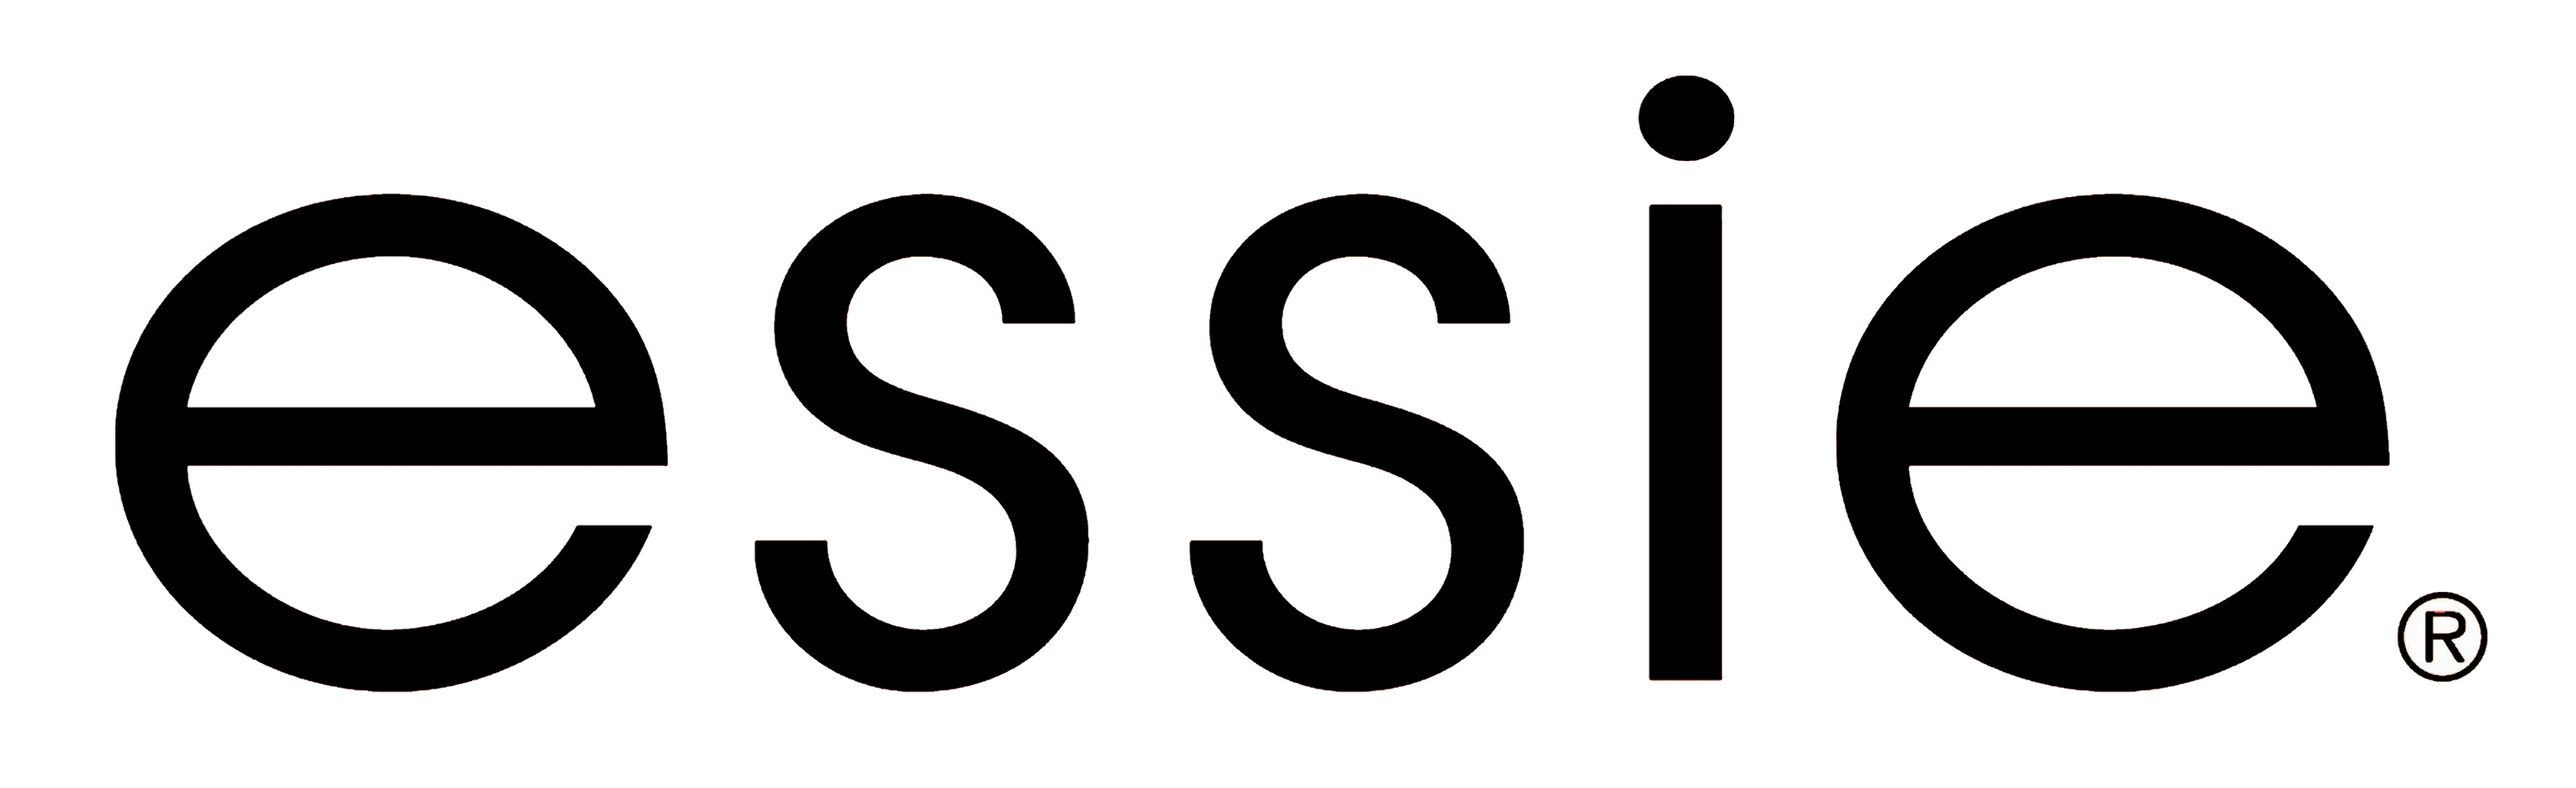 Essie Black Logo Wallpaper